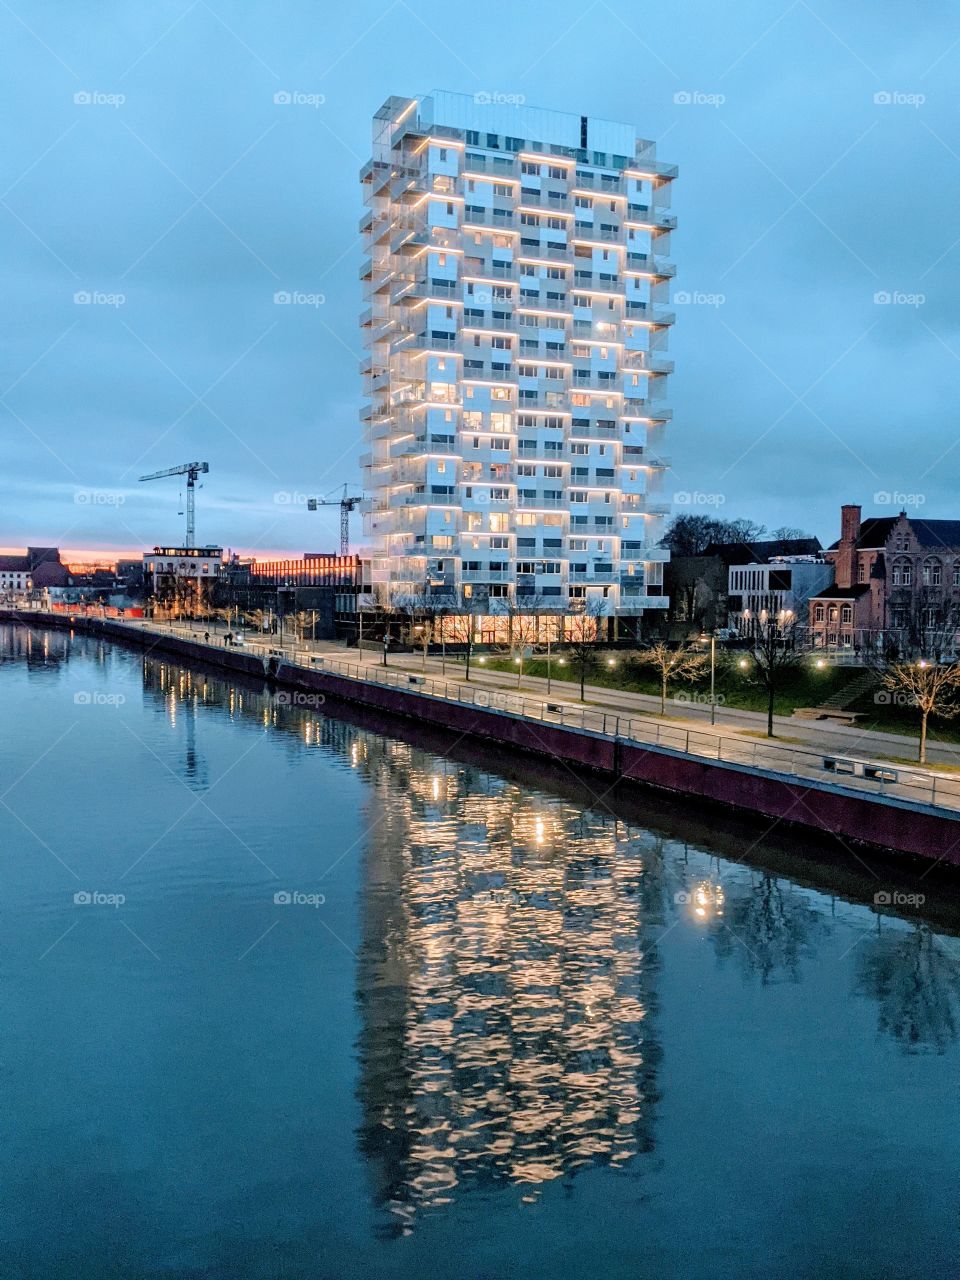 skyscraper mirrored in the river